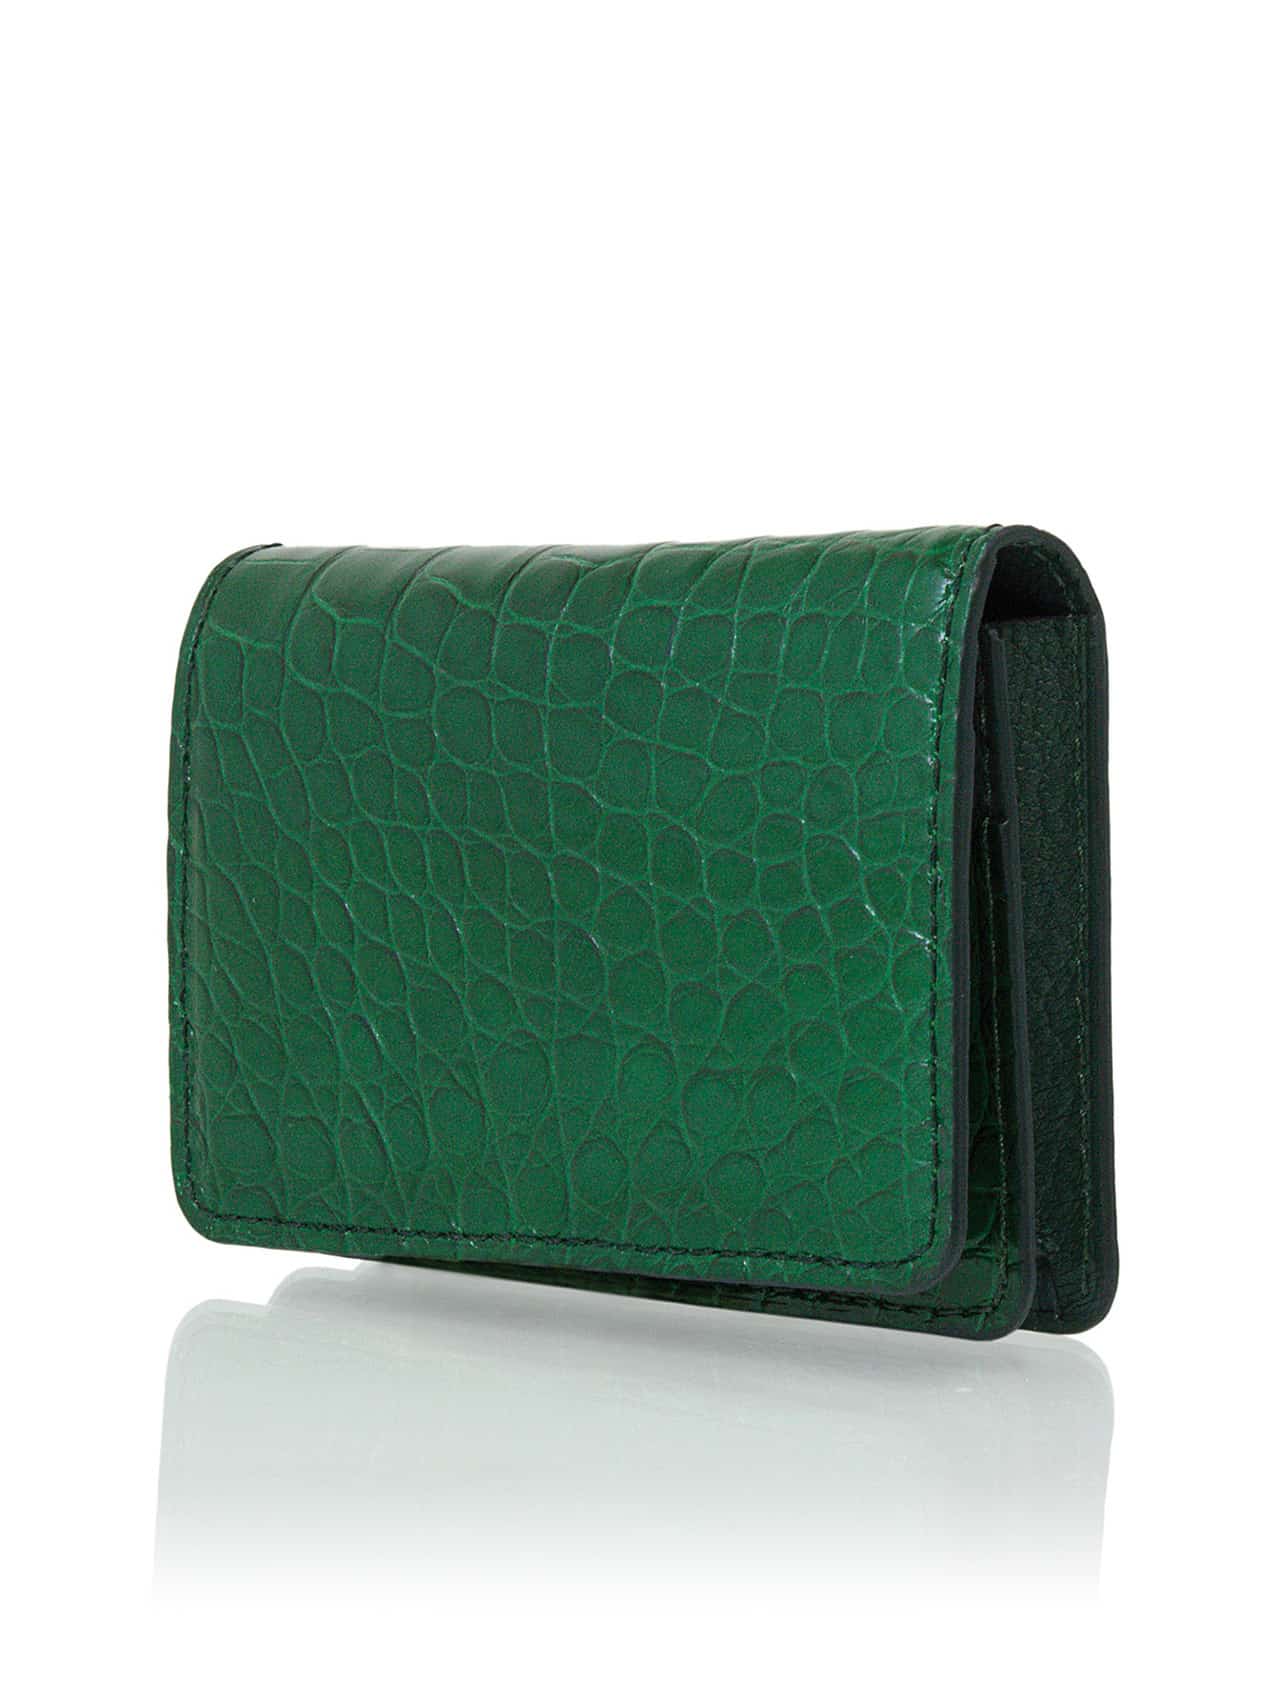 Crocodile Leather Shiny Emerald Cardholder